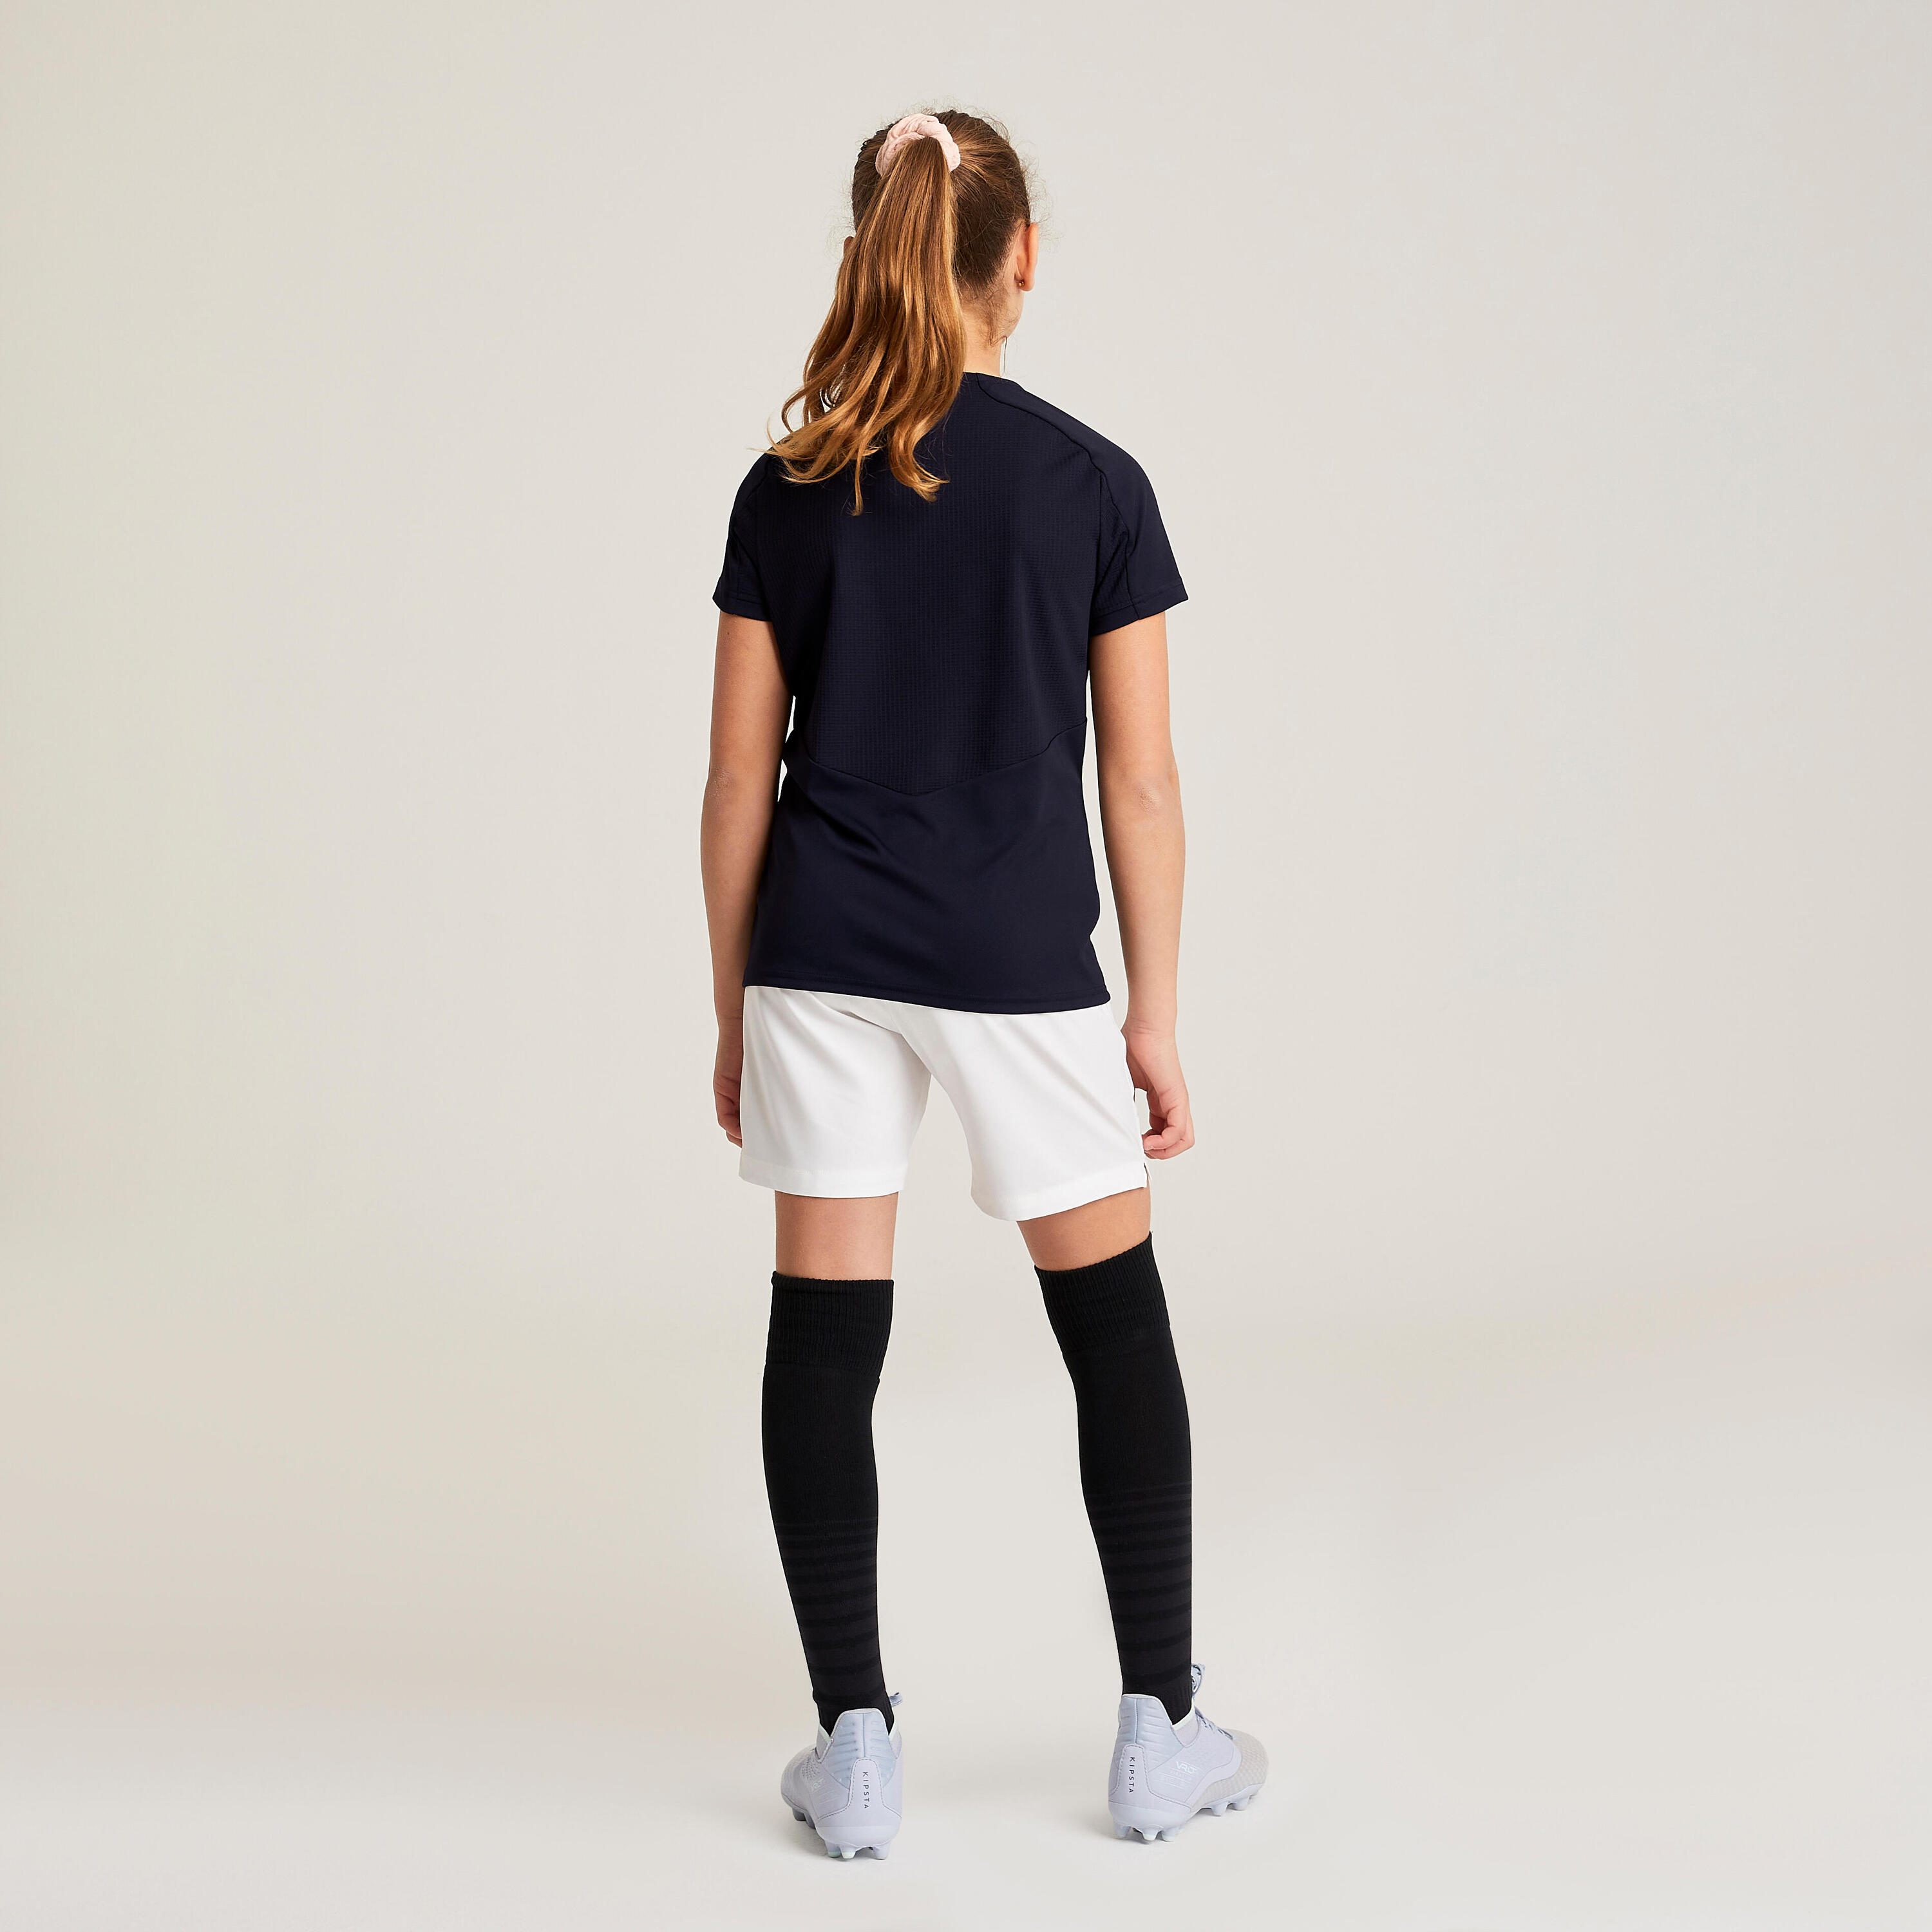 Girls' Football Shirt Viralto - Black 4/10